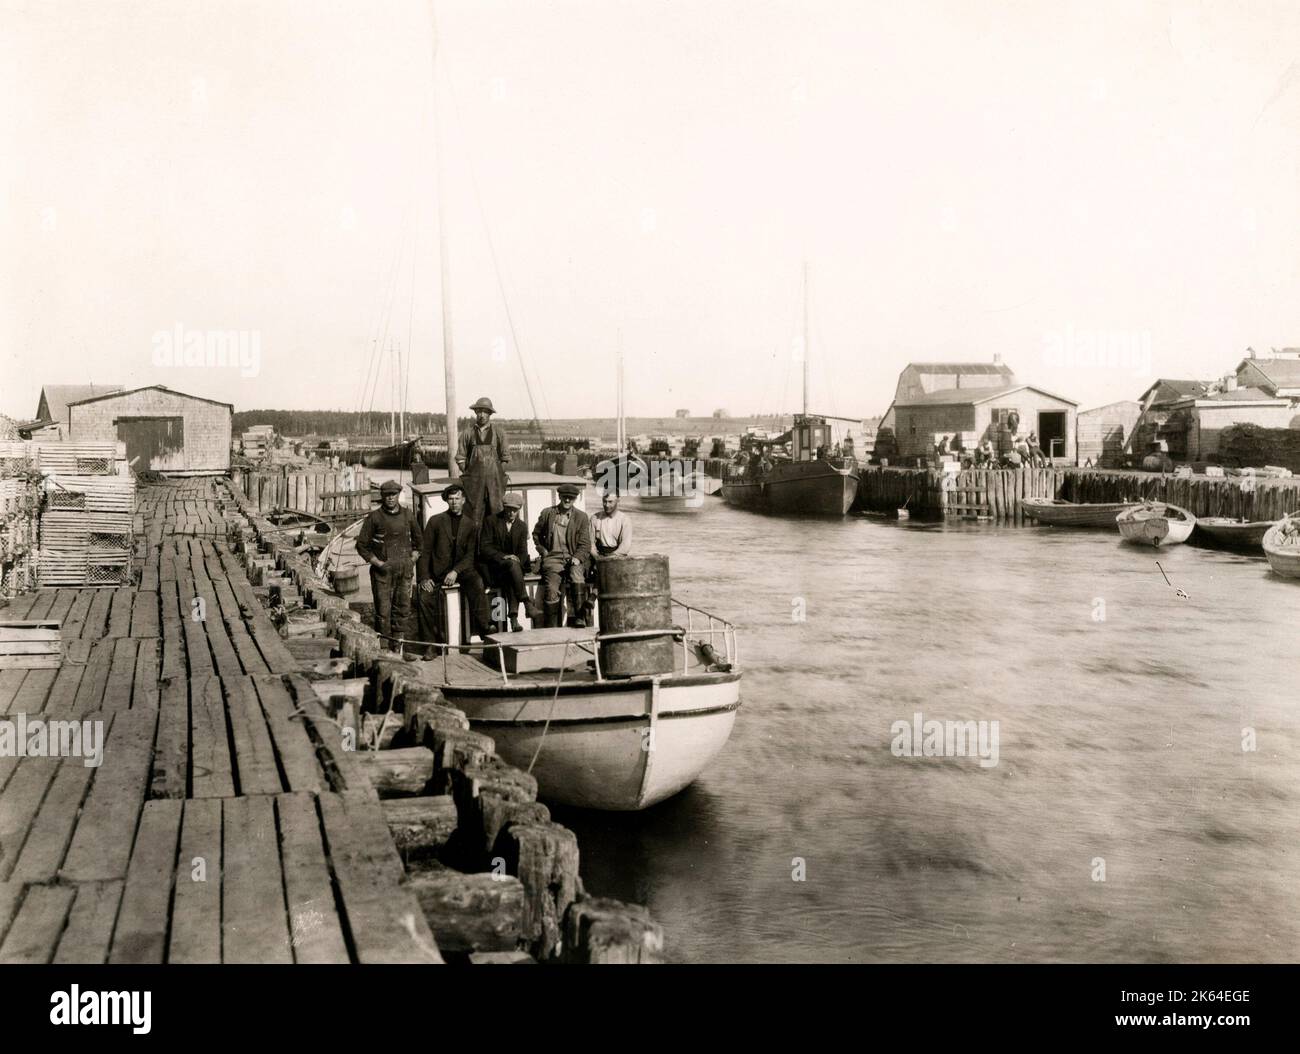 Fotografía de prensa de época de principios del siglo 20th - barcos en puerto, Tignish Run, Isla del Príncipe Eduardo, Canadá, c.1920. Foto de stock